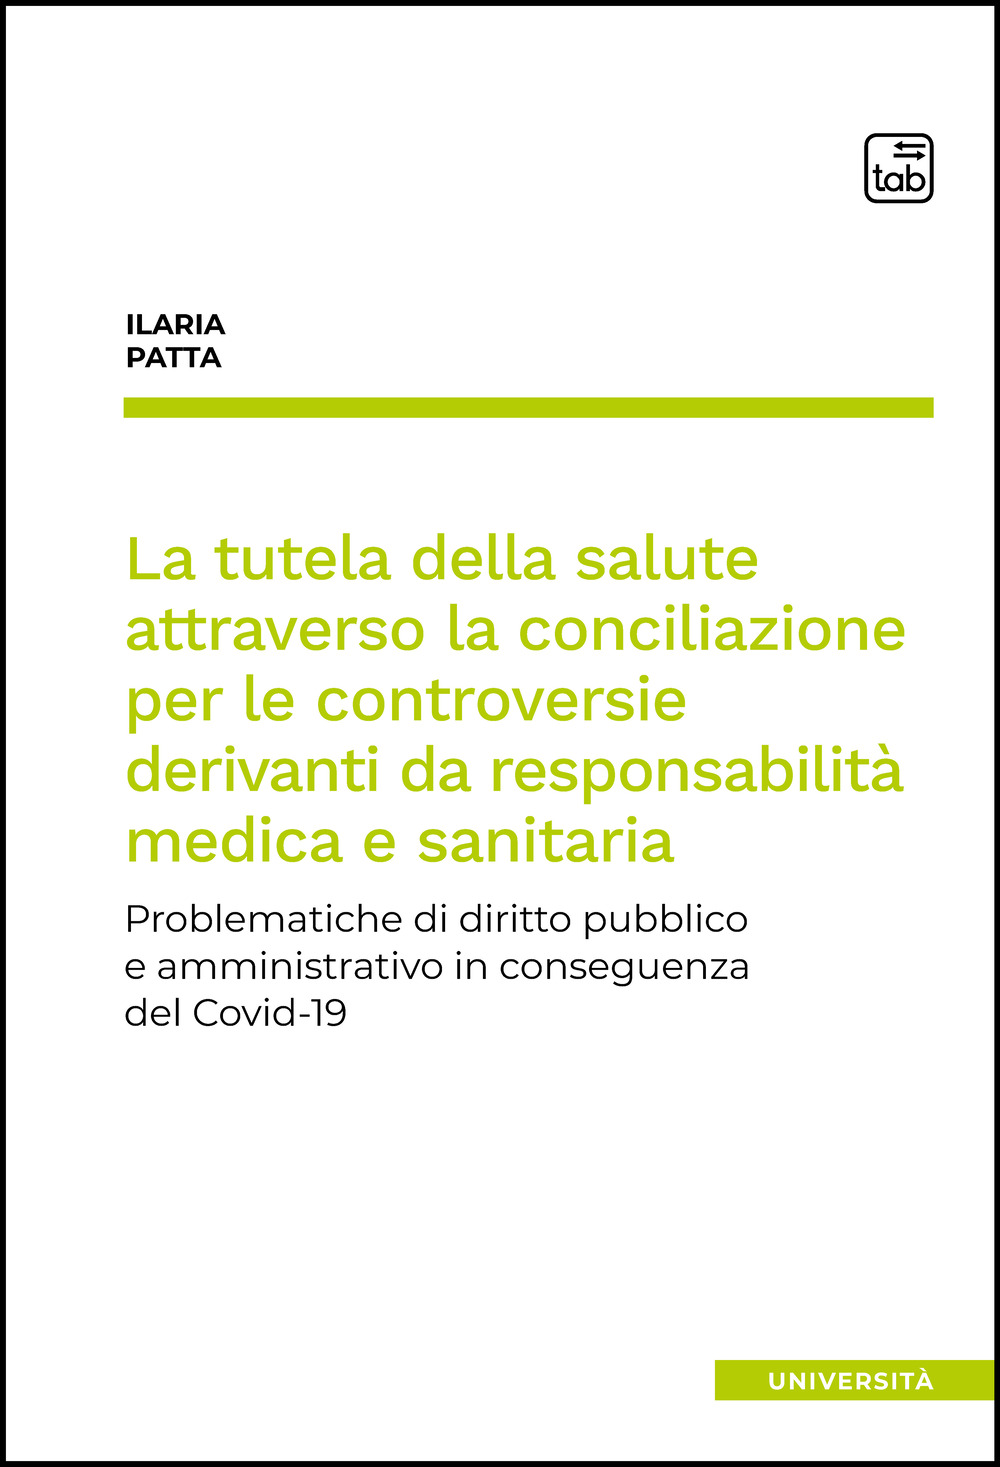 La tutela della salute attraverso la conciliazione per le controversie derivanti da responsabilità medica e sanitaria. Problematiche di diritto pubblico e amministrativo in conseguenza del Covid-19